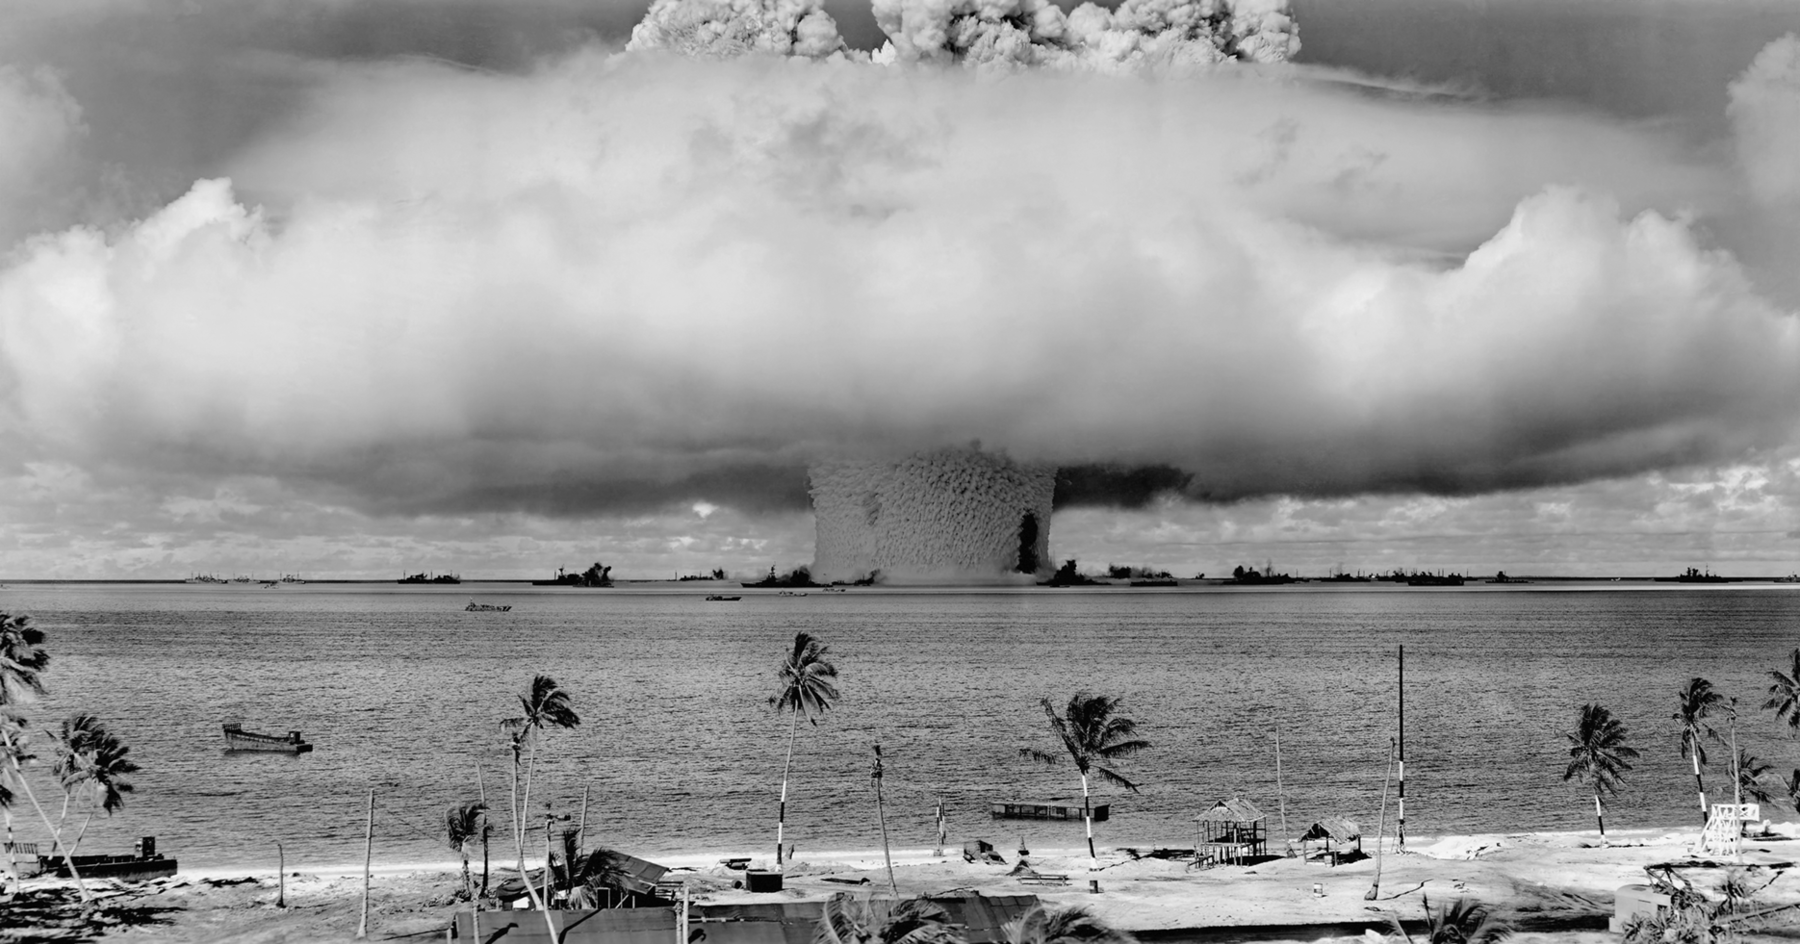 Fotografia em preto e branco. Uma grande explosão no mar. Há uma imensa nuvem de fumaça acima, em formato de cogumelo, em frente há uma praia com coqueiros.